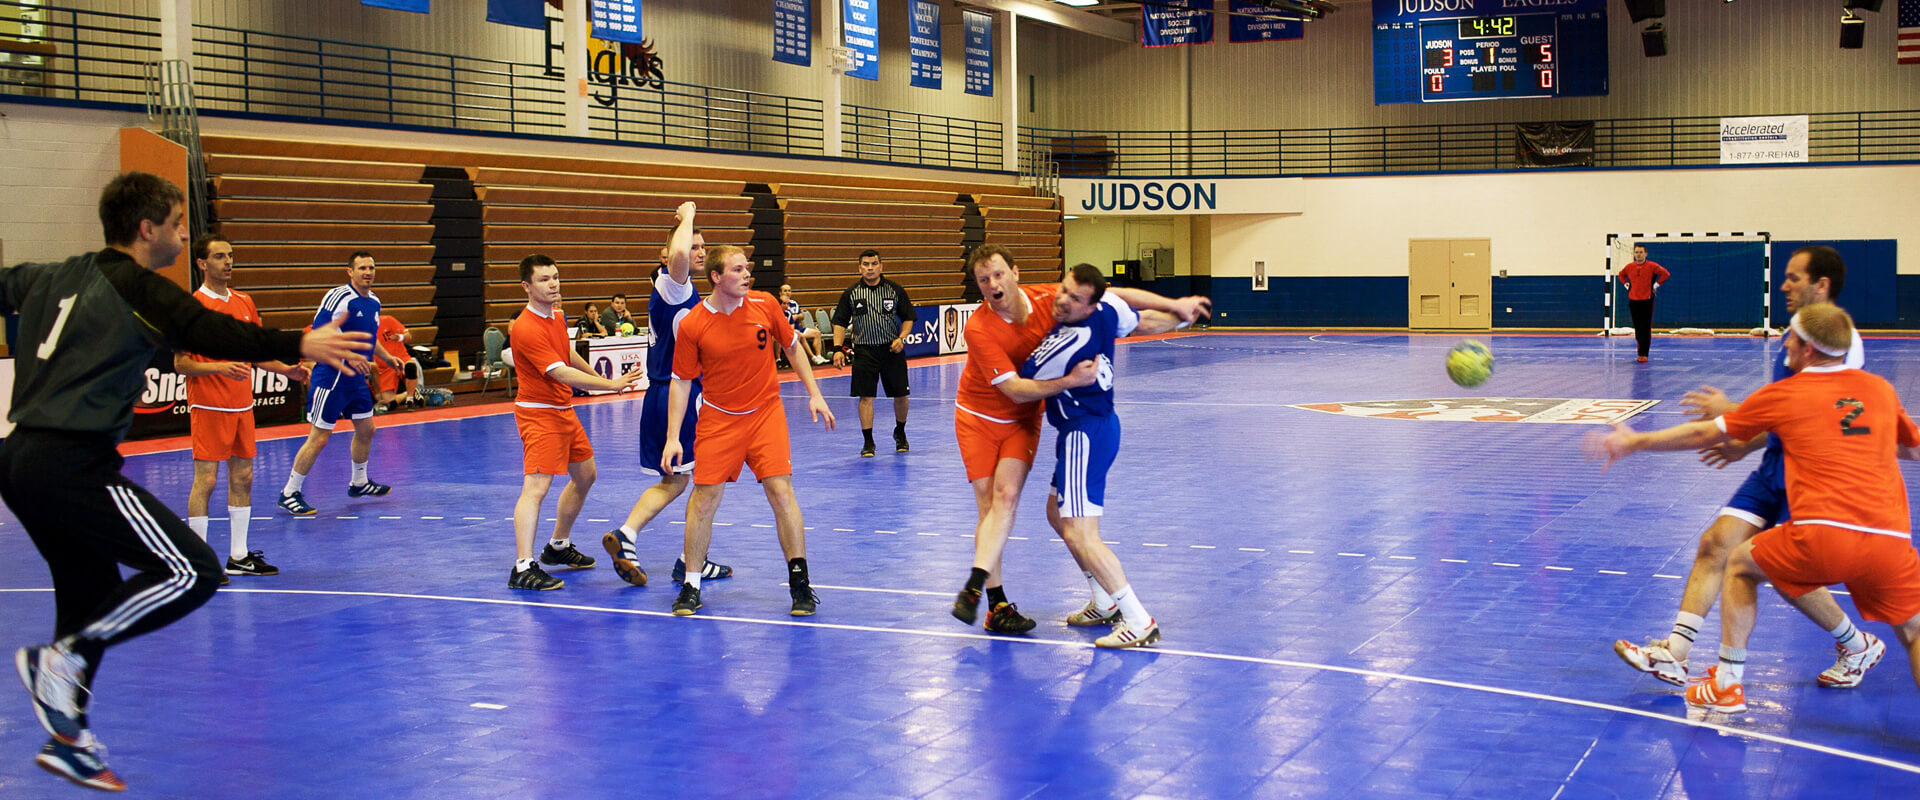 Commercial Handball Courts | Team Handball